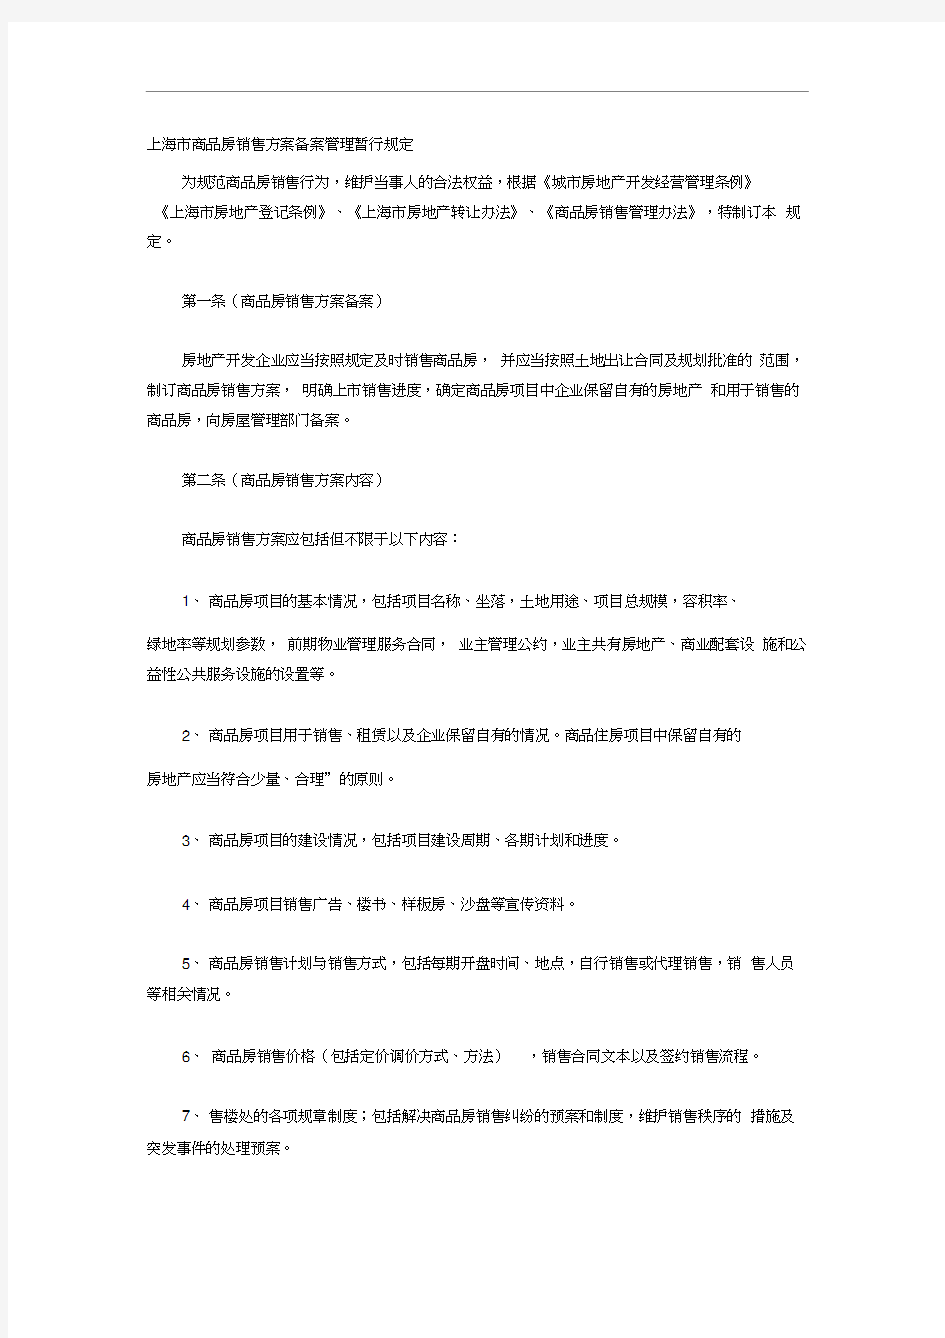 上海市商品房销售方案备案管理暂行规定